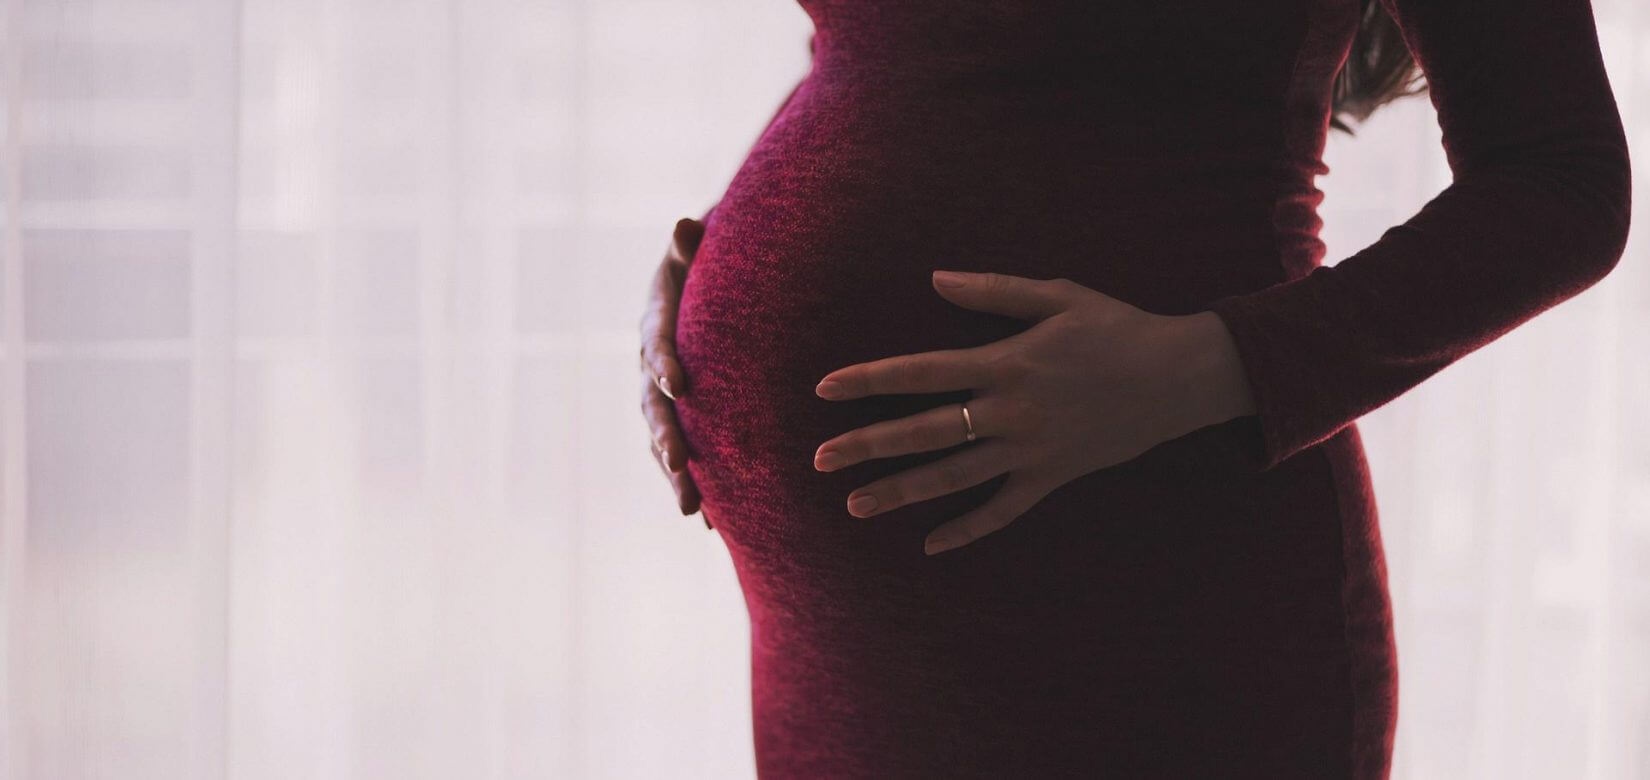 ΕΟΦ: Ανακαλεί παρτίδες προϊόντων για εγκύους – Κίνδυνος βλάβης στο έμβρυο